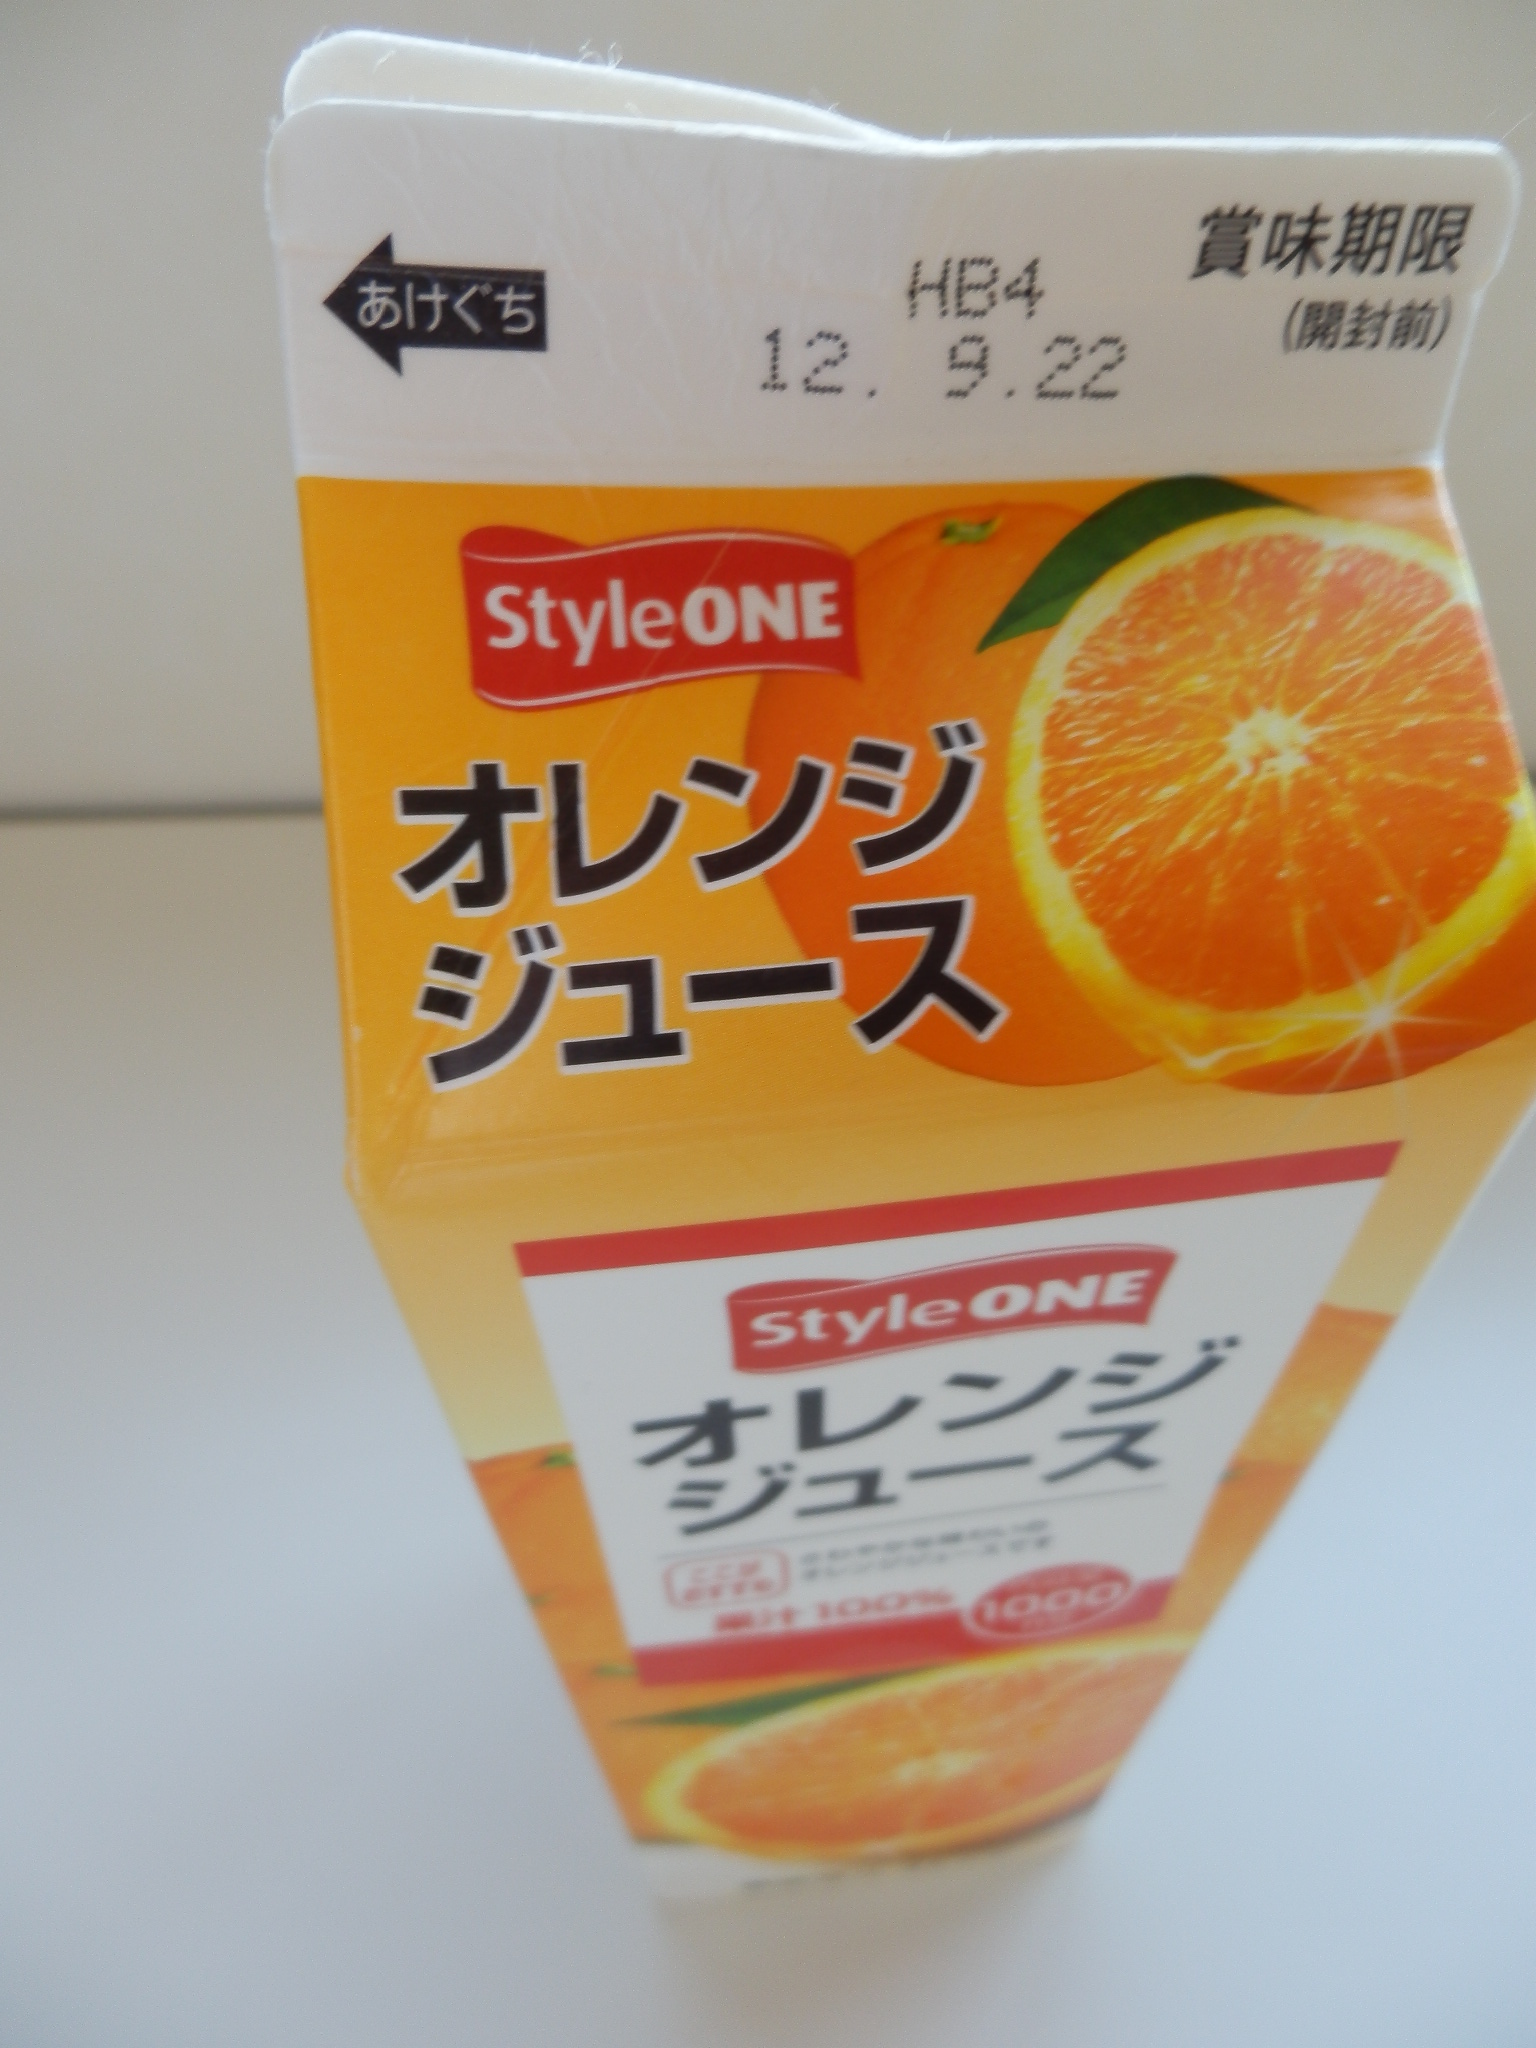 スタイルワン オレンジジュース 放射能測定結果について 八進測定結果一覧